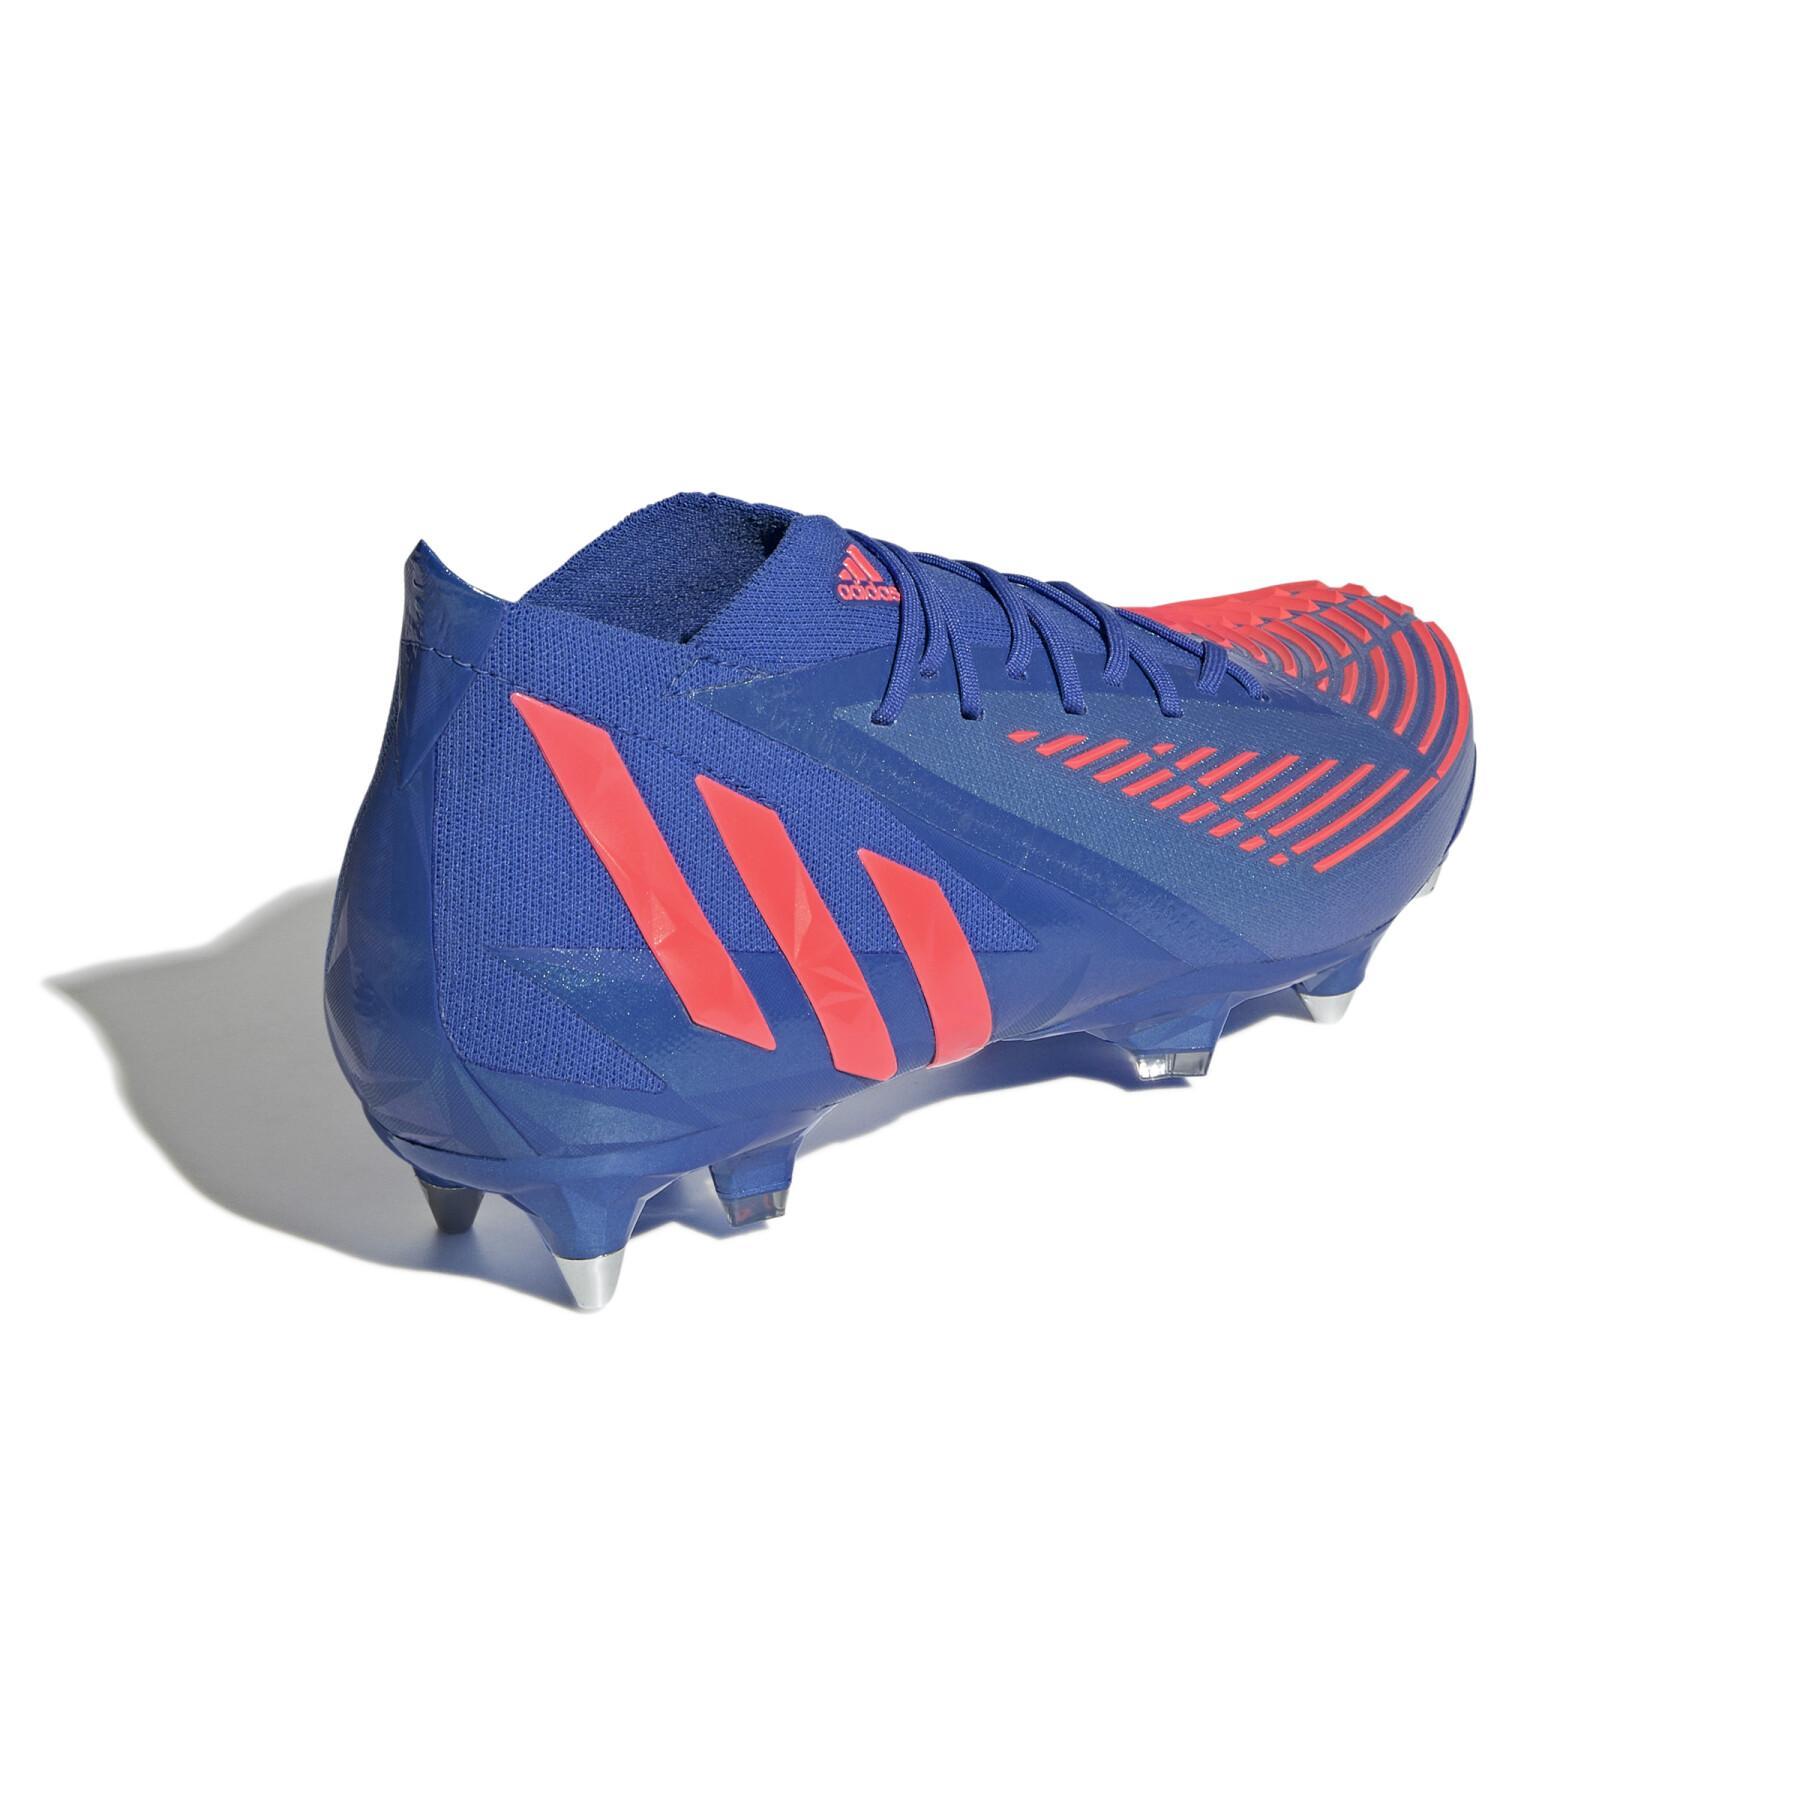 Soccer shoes adidas Predator Edge.1 SG - Sapphire Edge Pack